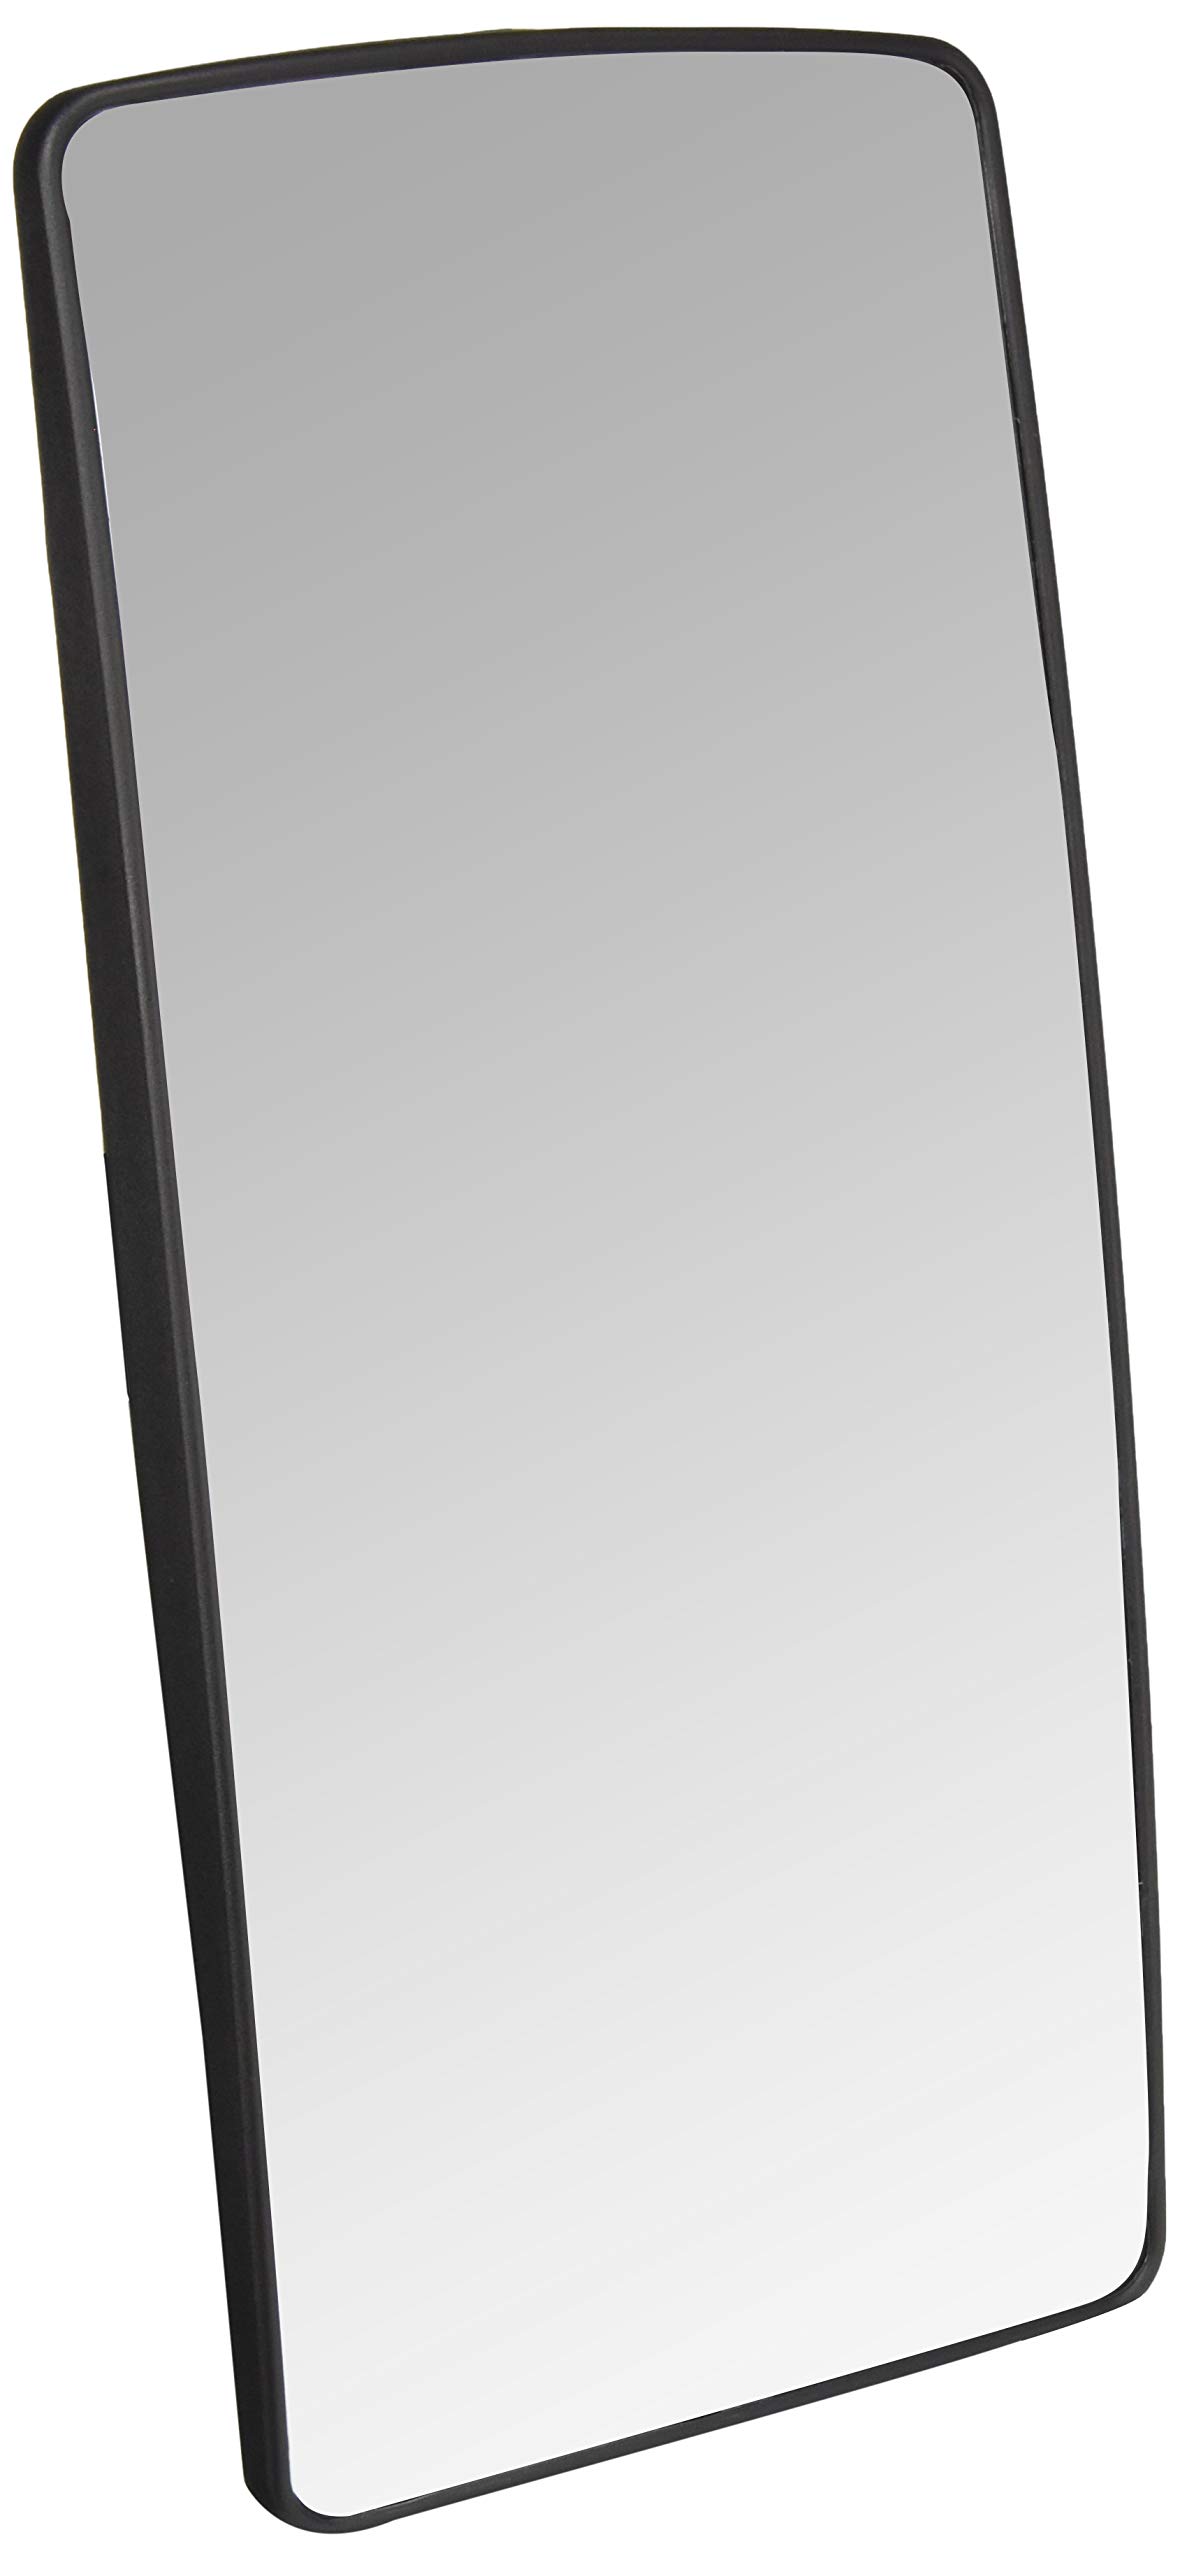 HELLA - Spiegelglas, Außenspiegel - 12V - beidseitig - 9MX 562 841-012 von Hella